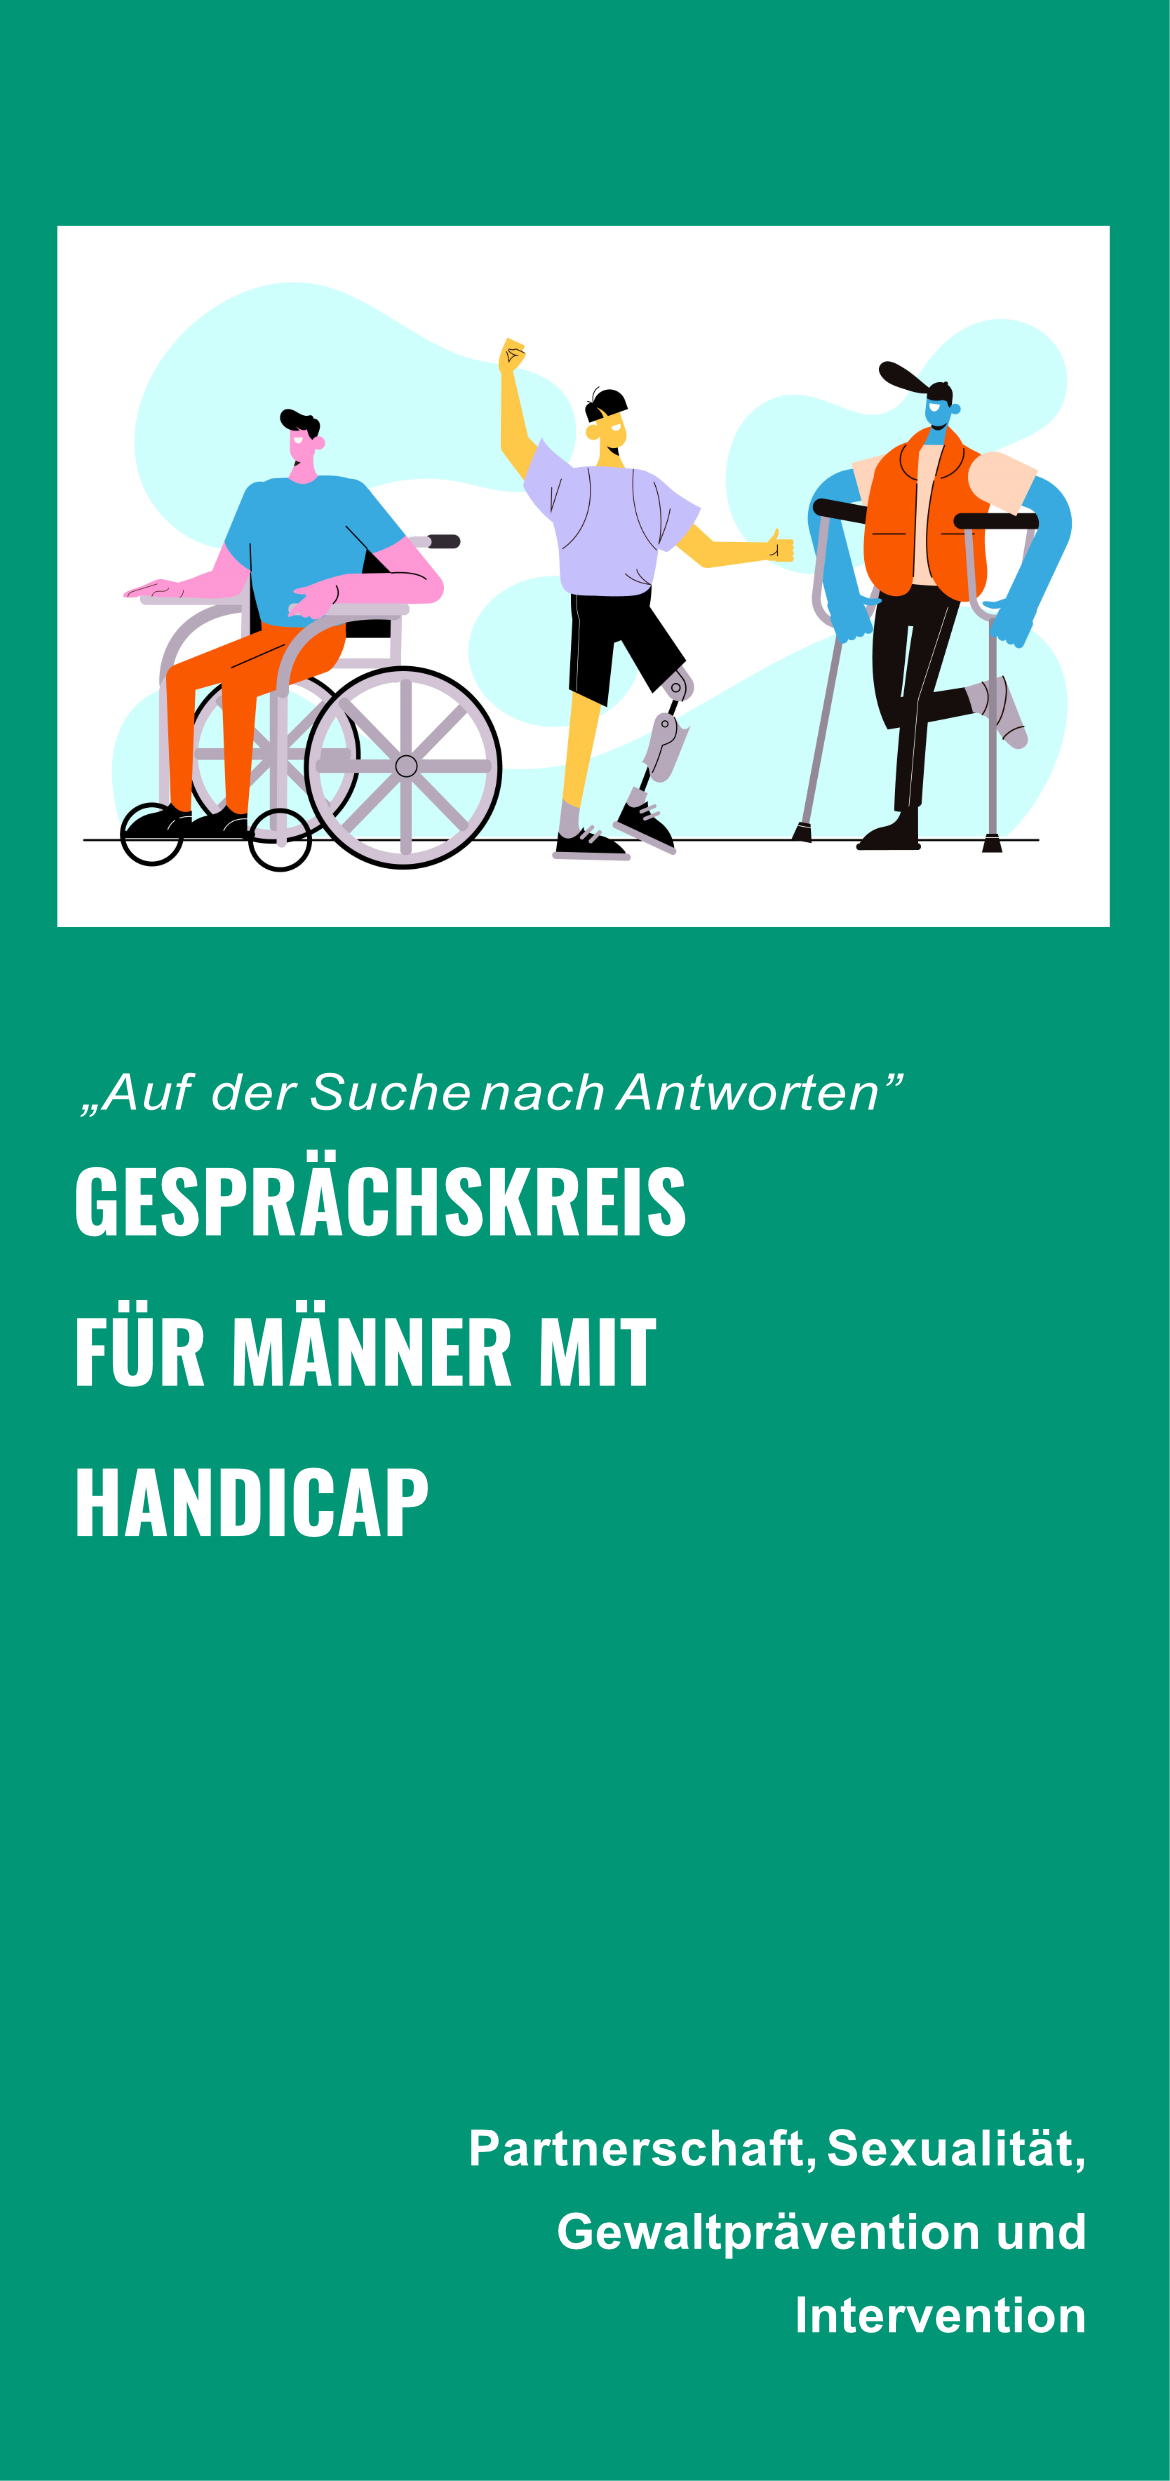 Flyer zur Veranstaltung. Männer mit verschiedenen Behinderung, im Rollstuhl und mit prothesen